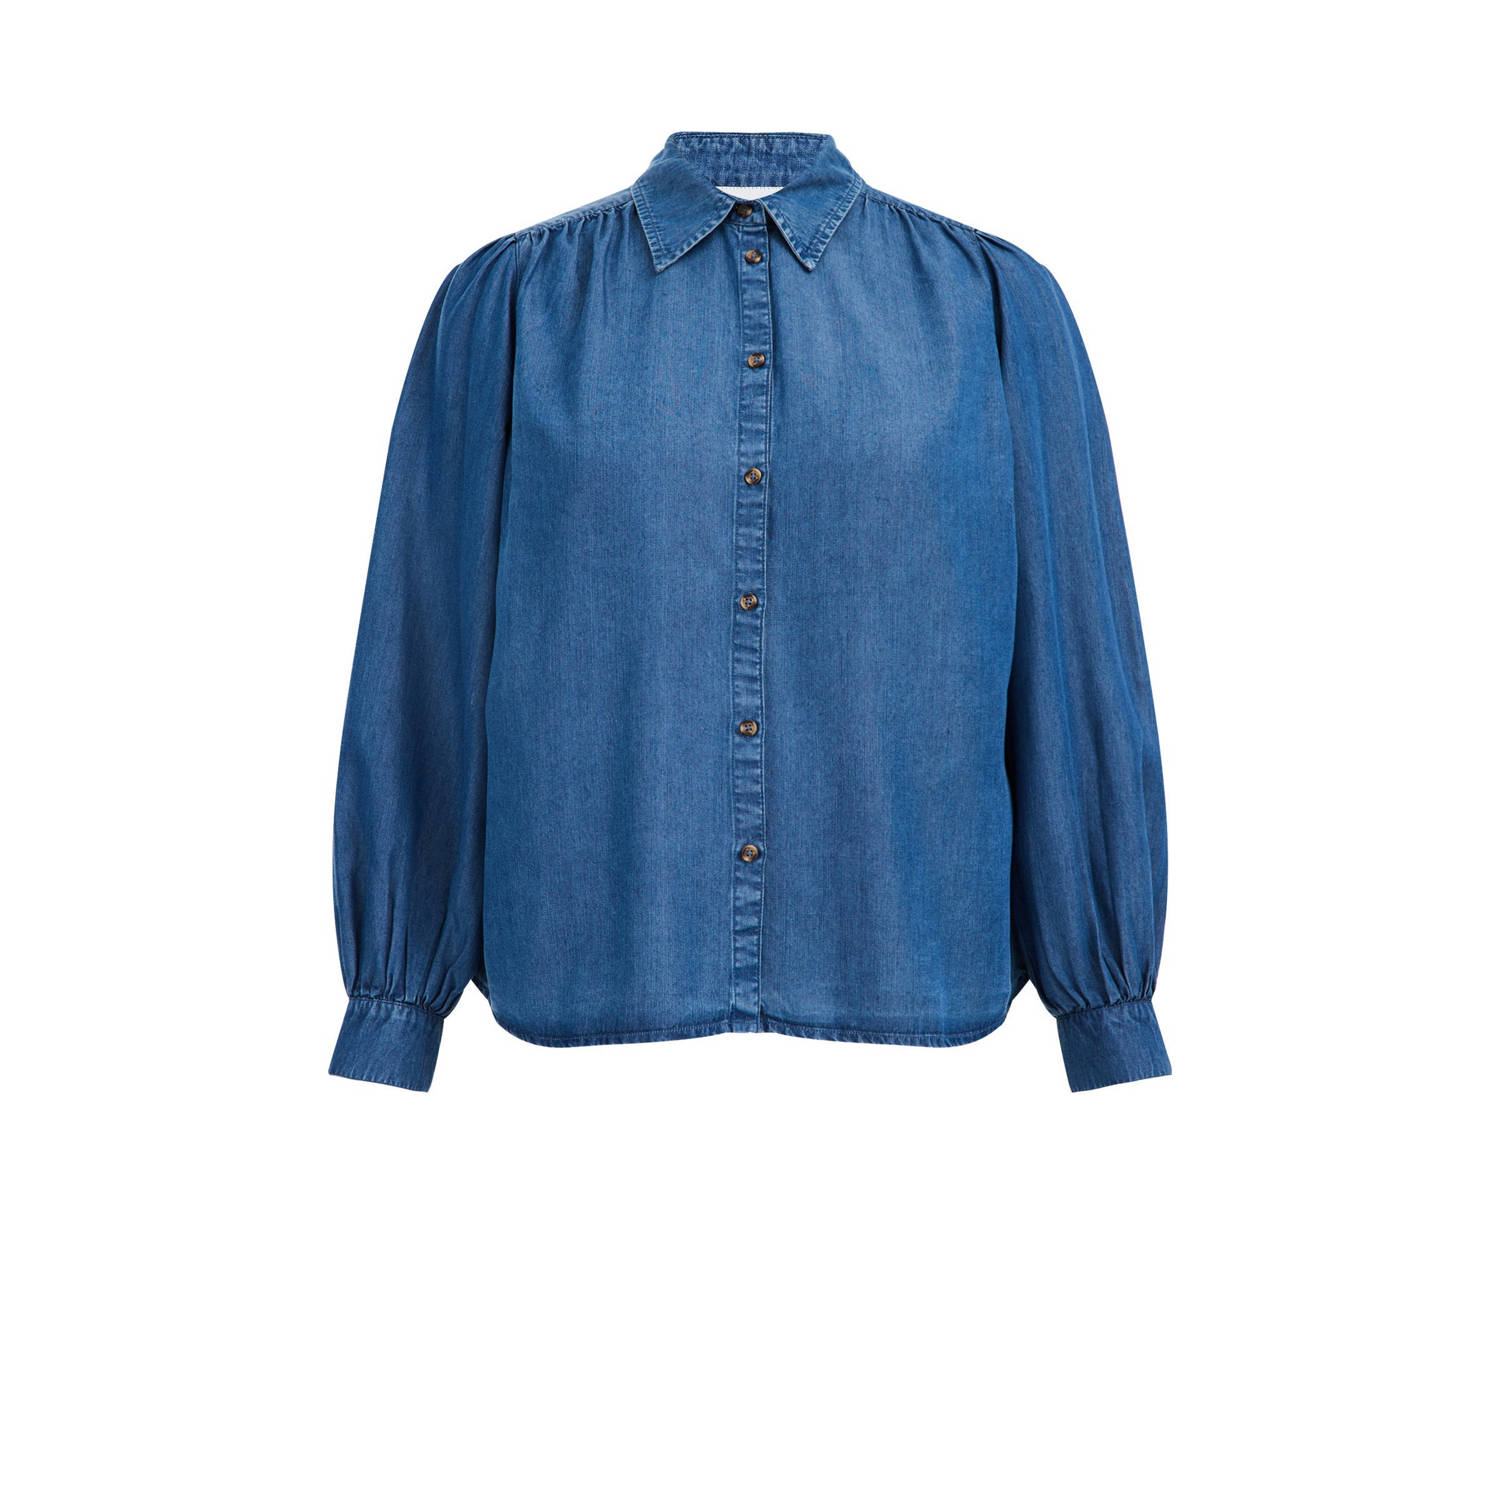 WE Fashion Curve blouse medium blue denim